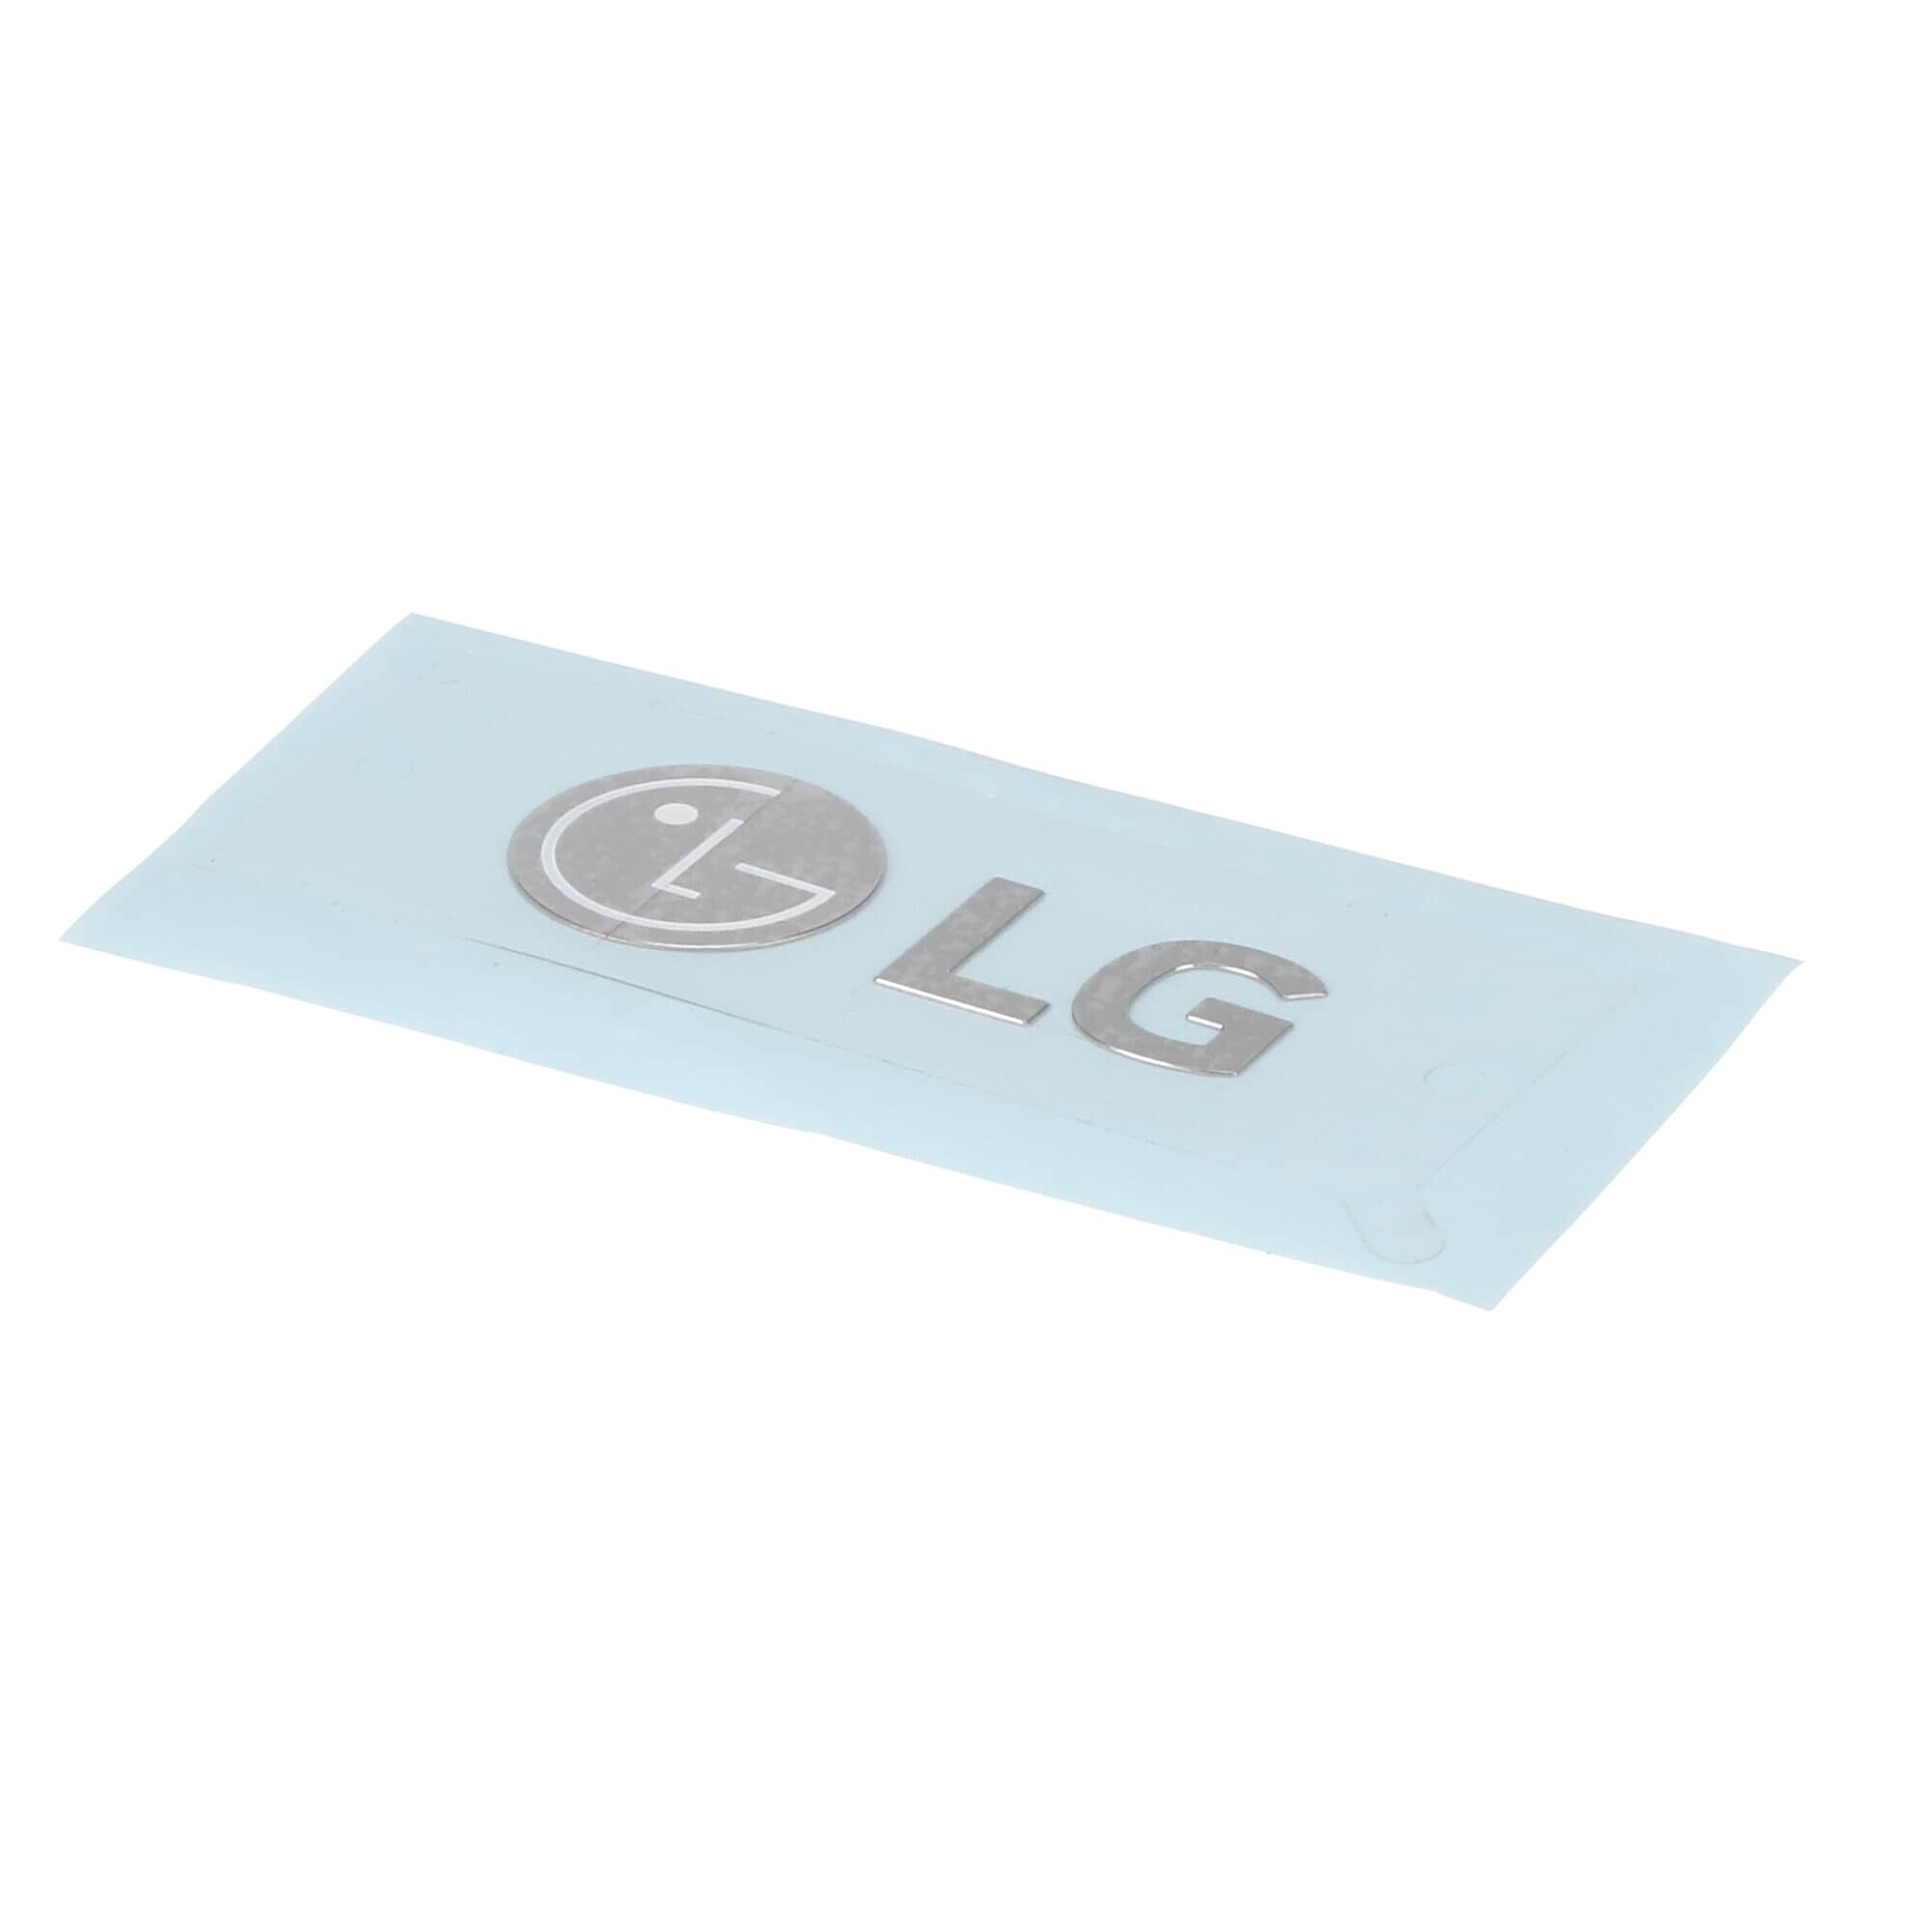 LG MFT62346511 Refrigerator Name Plate